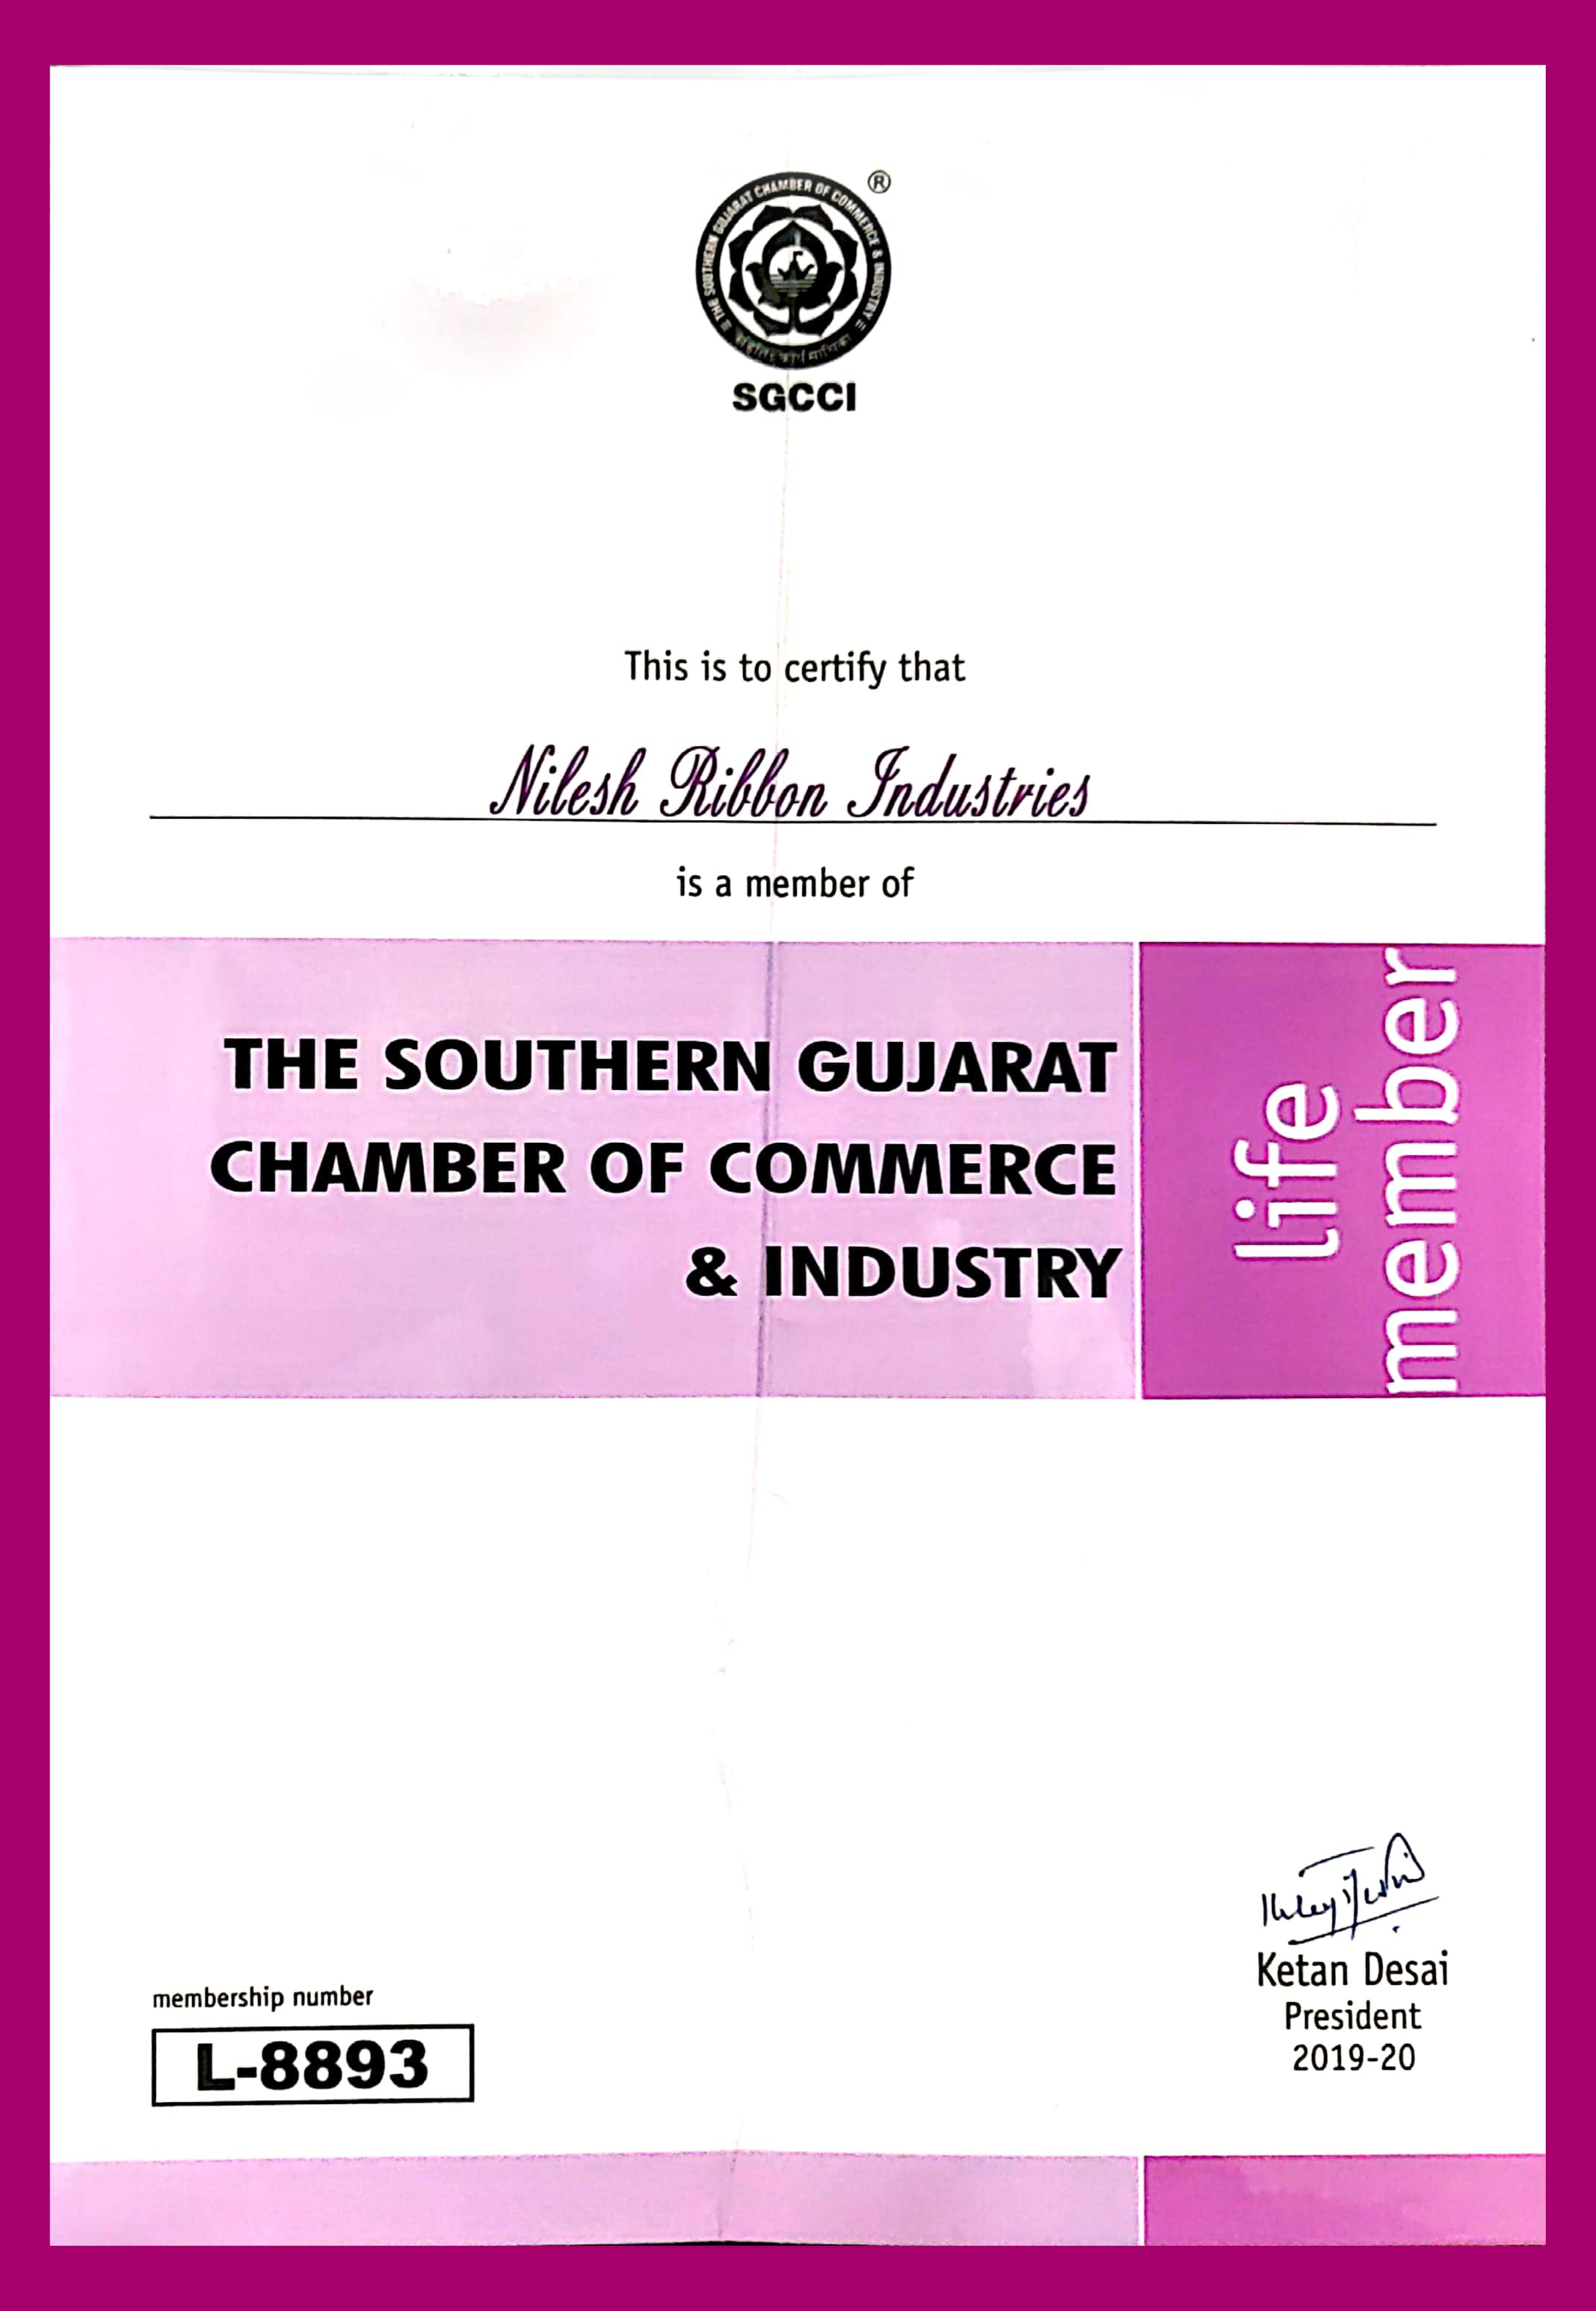 SGCCI Membership Certificate